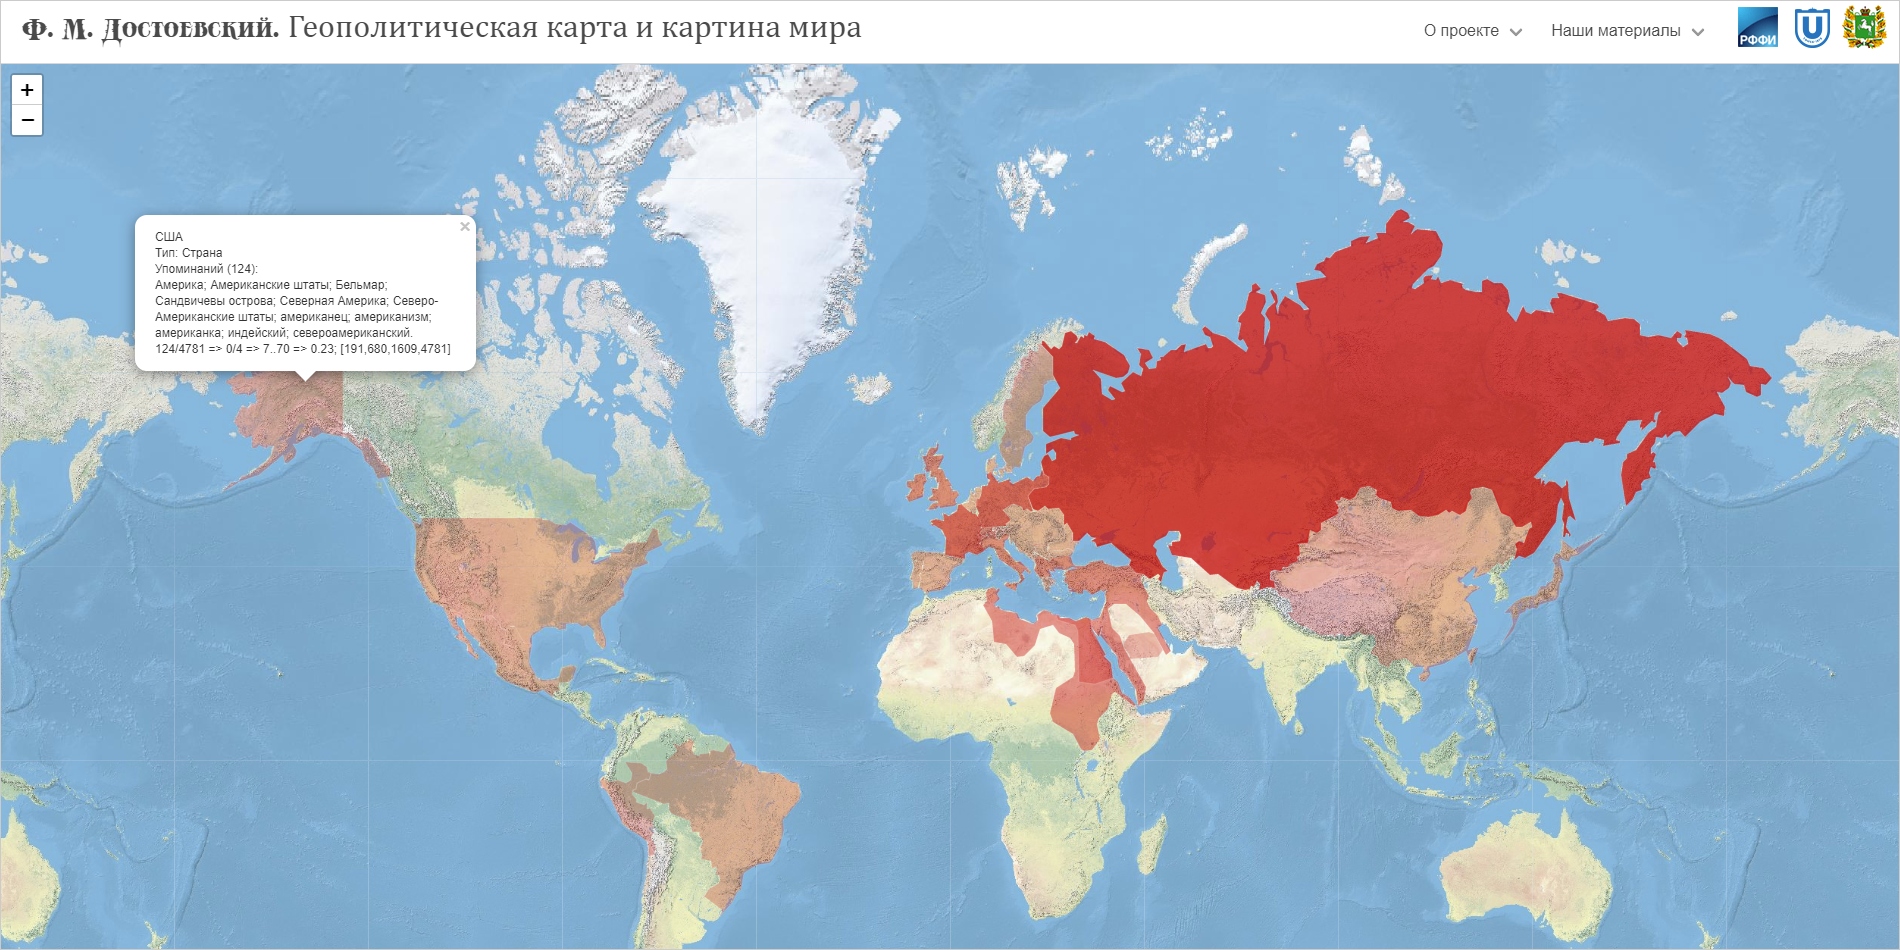 Карта мира по Ф.М. Достоевскому